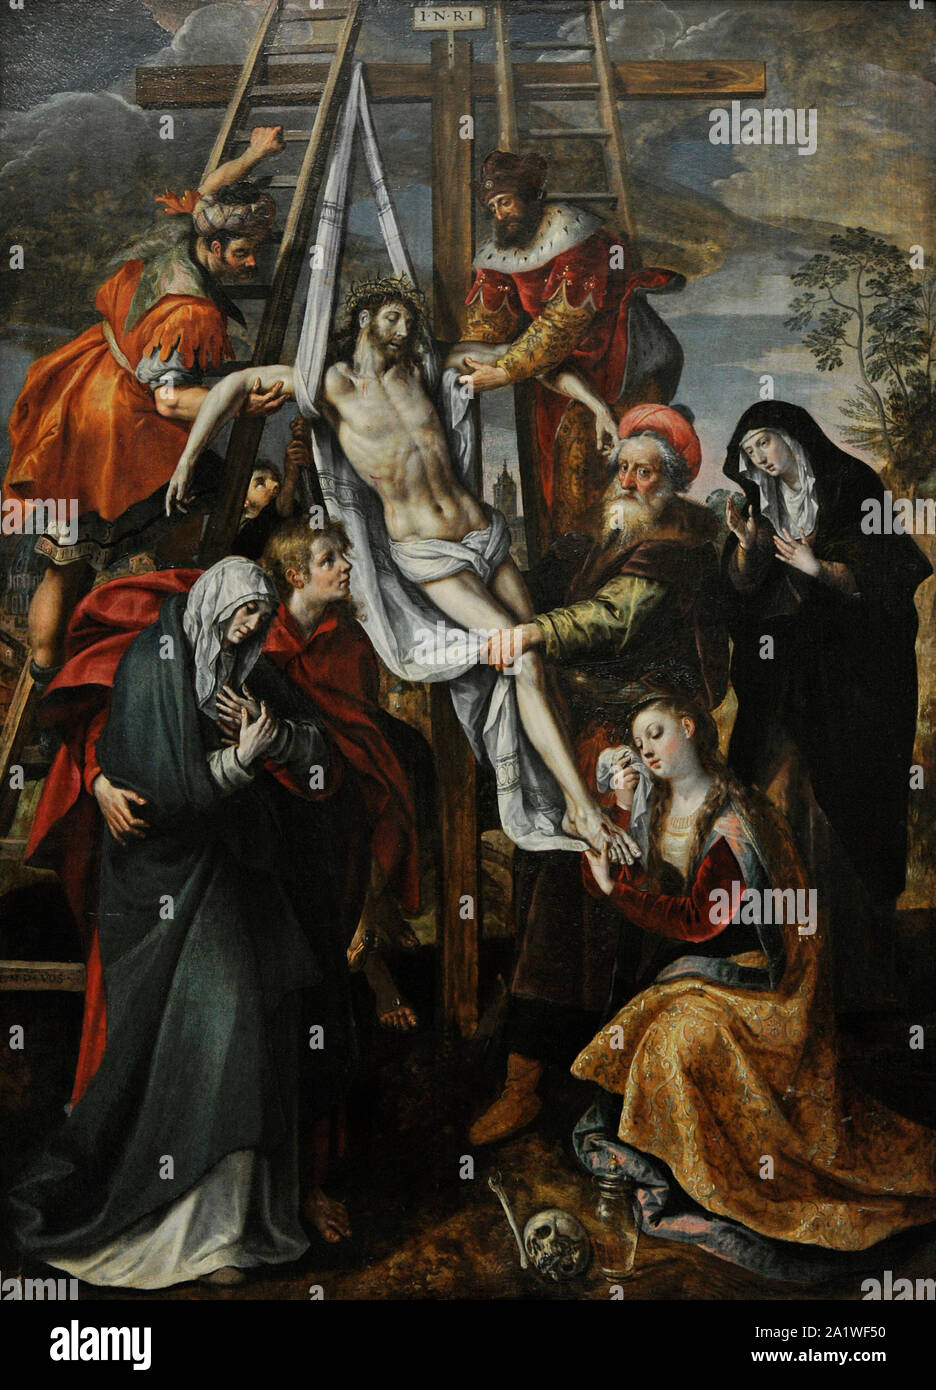 Maarten de Vos (1532-1603). Flämische Maler. Der Abstieg vom Kreuz. San Fernando Königliche Akademie der Schönen Künste in Madrid. Spanien. Stockfoto